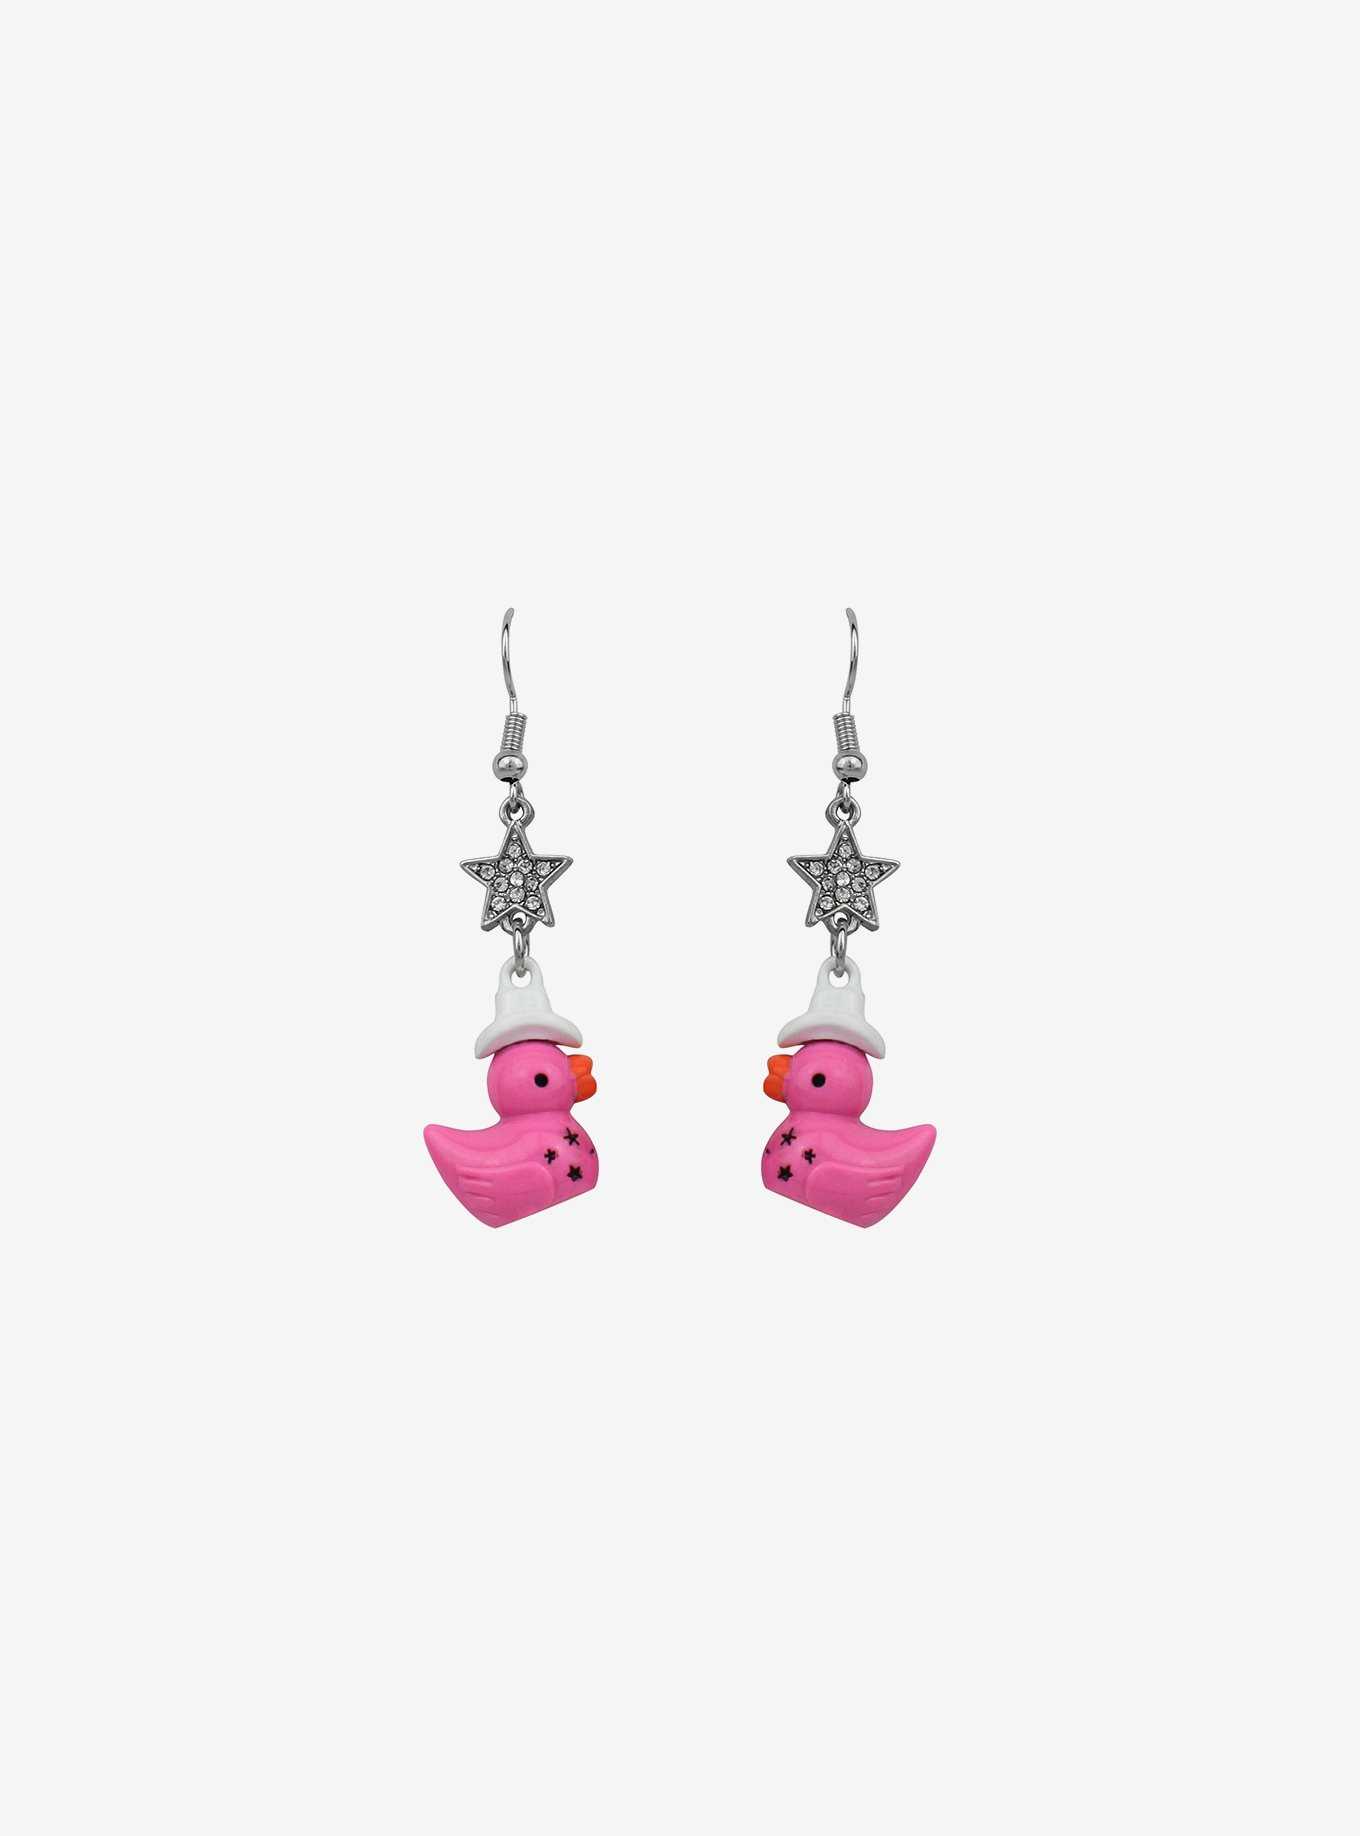 Sweet Society Pink Cowboy Duck Earrings, , hi-res